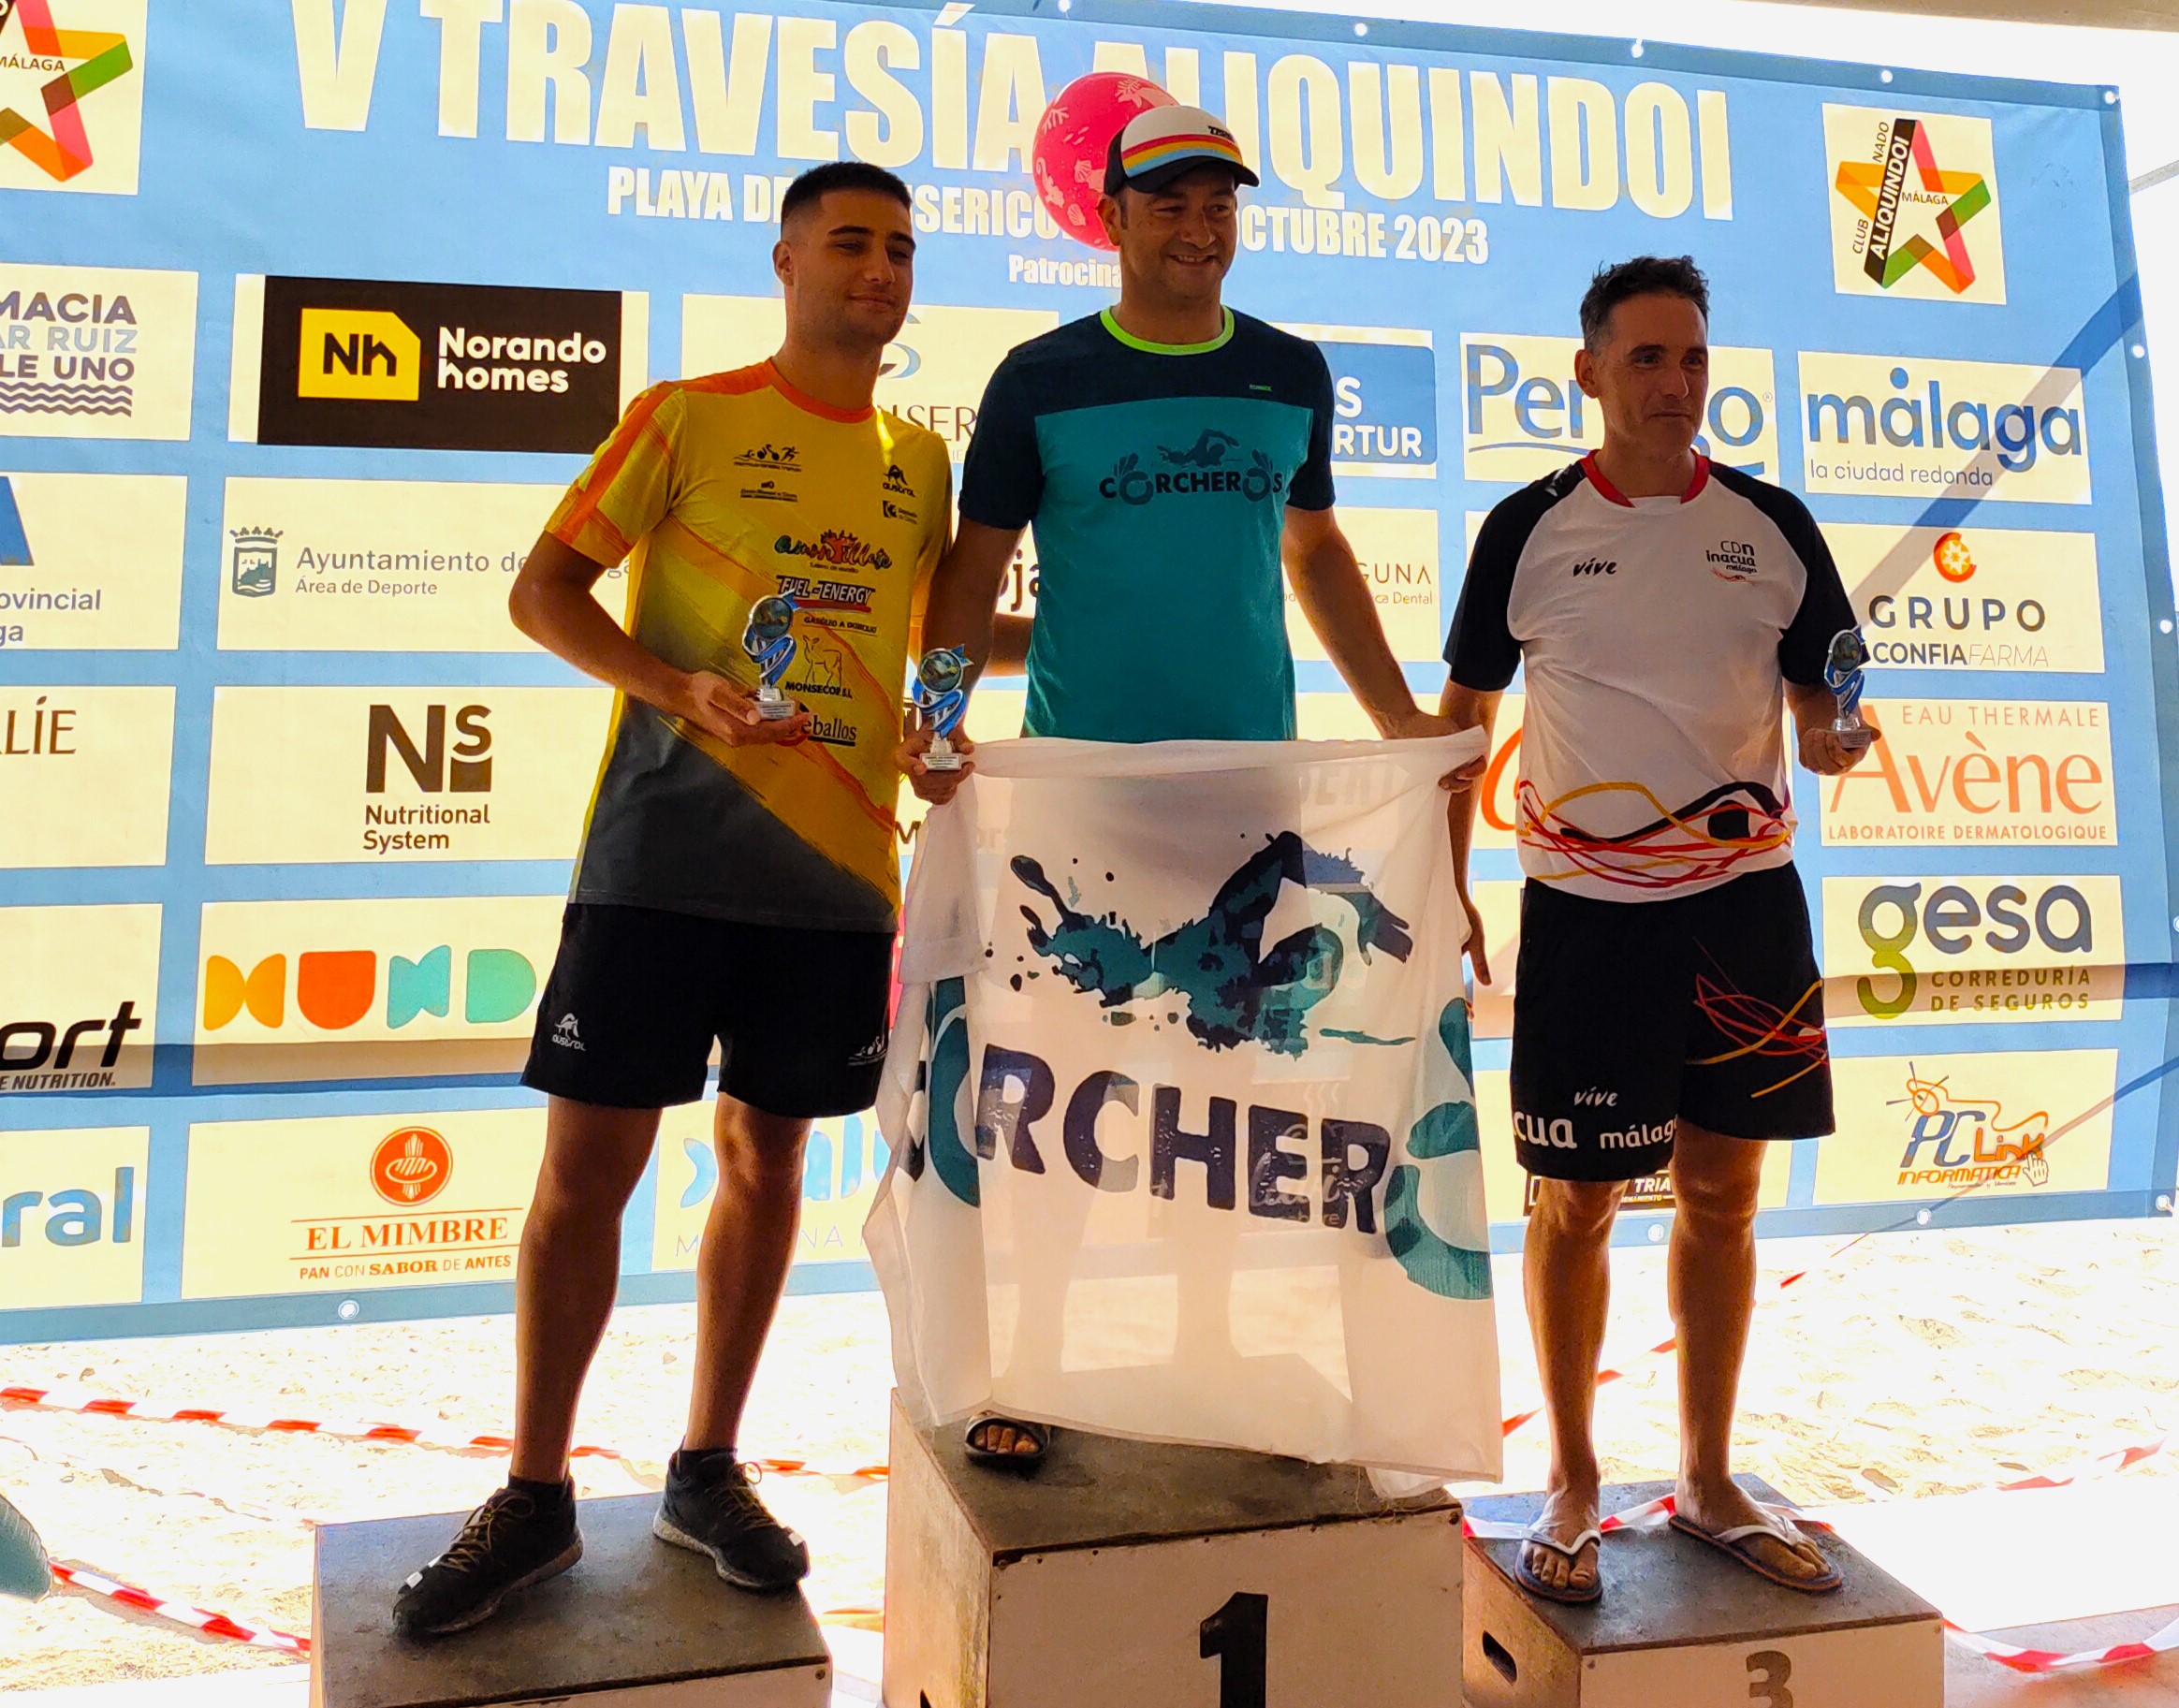 Rubén Gutiérrez, se proclama Campeón Absoluto de la Travesía Aliquindoi en Málaga